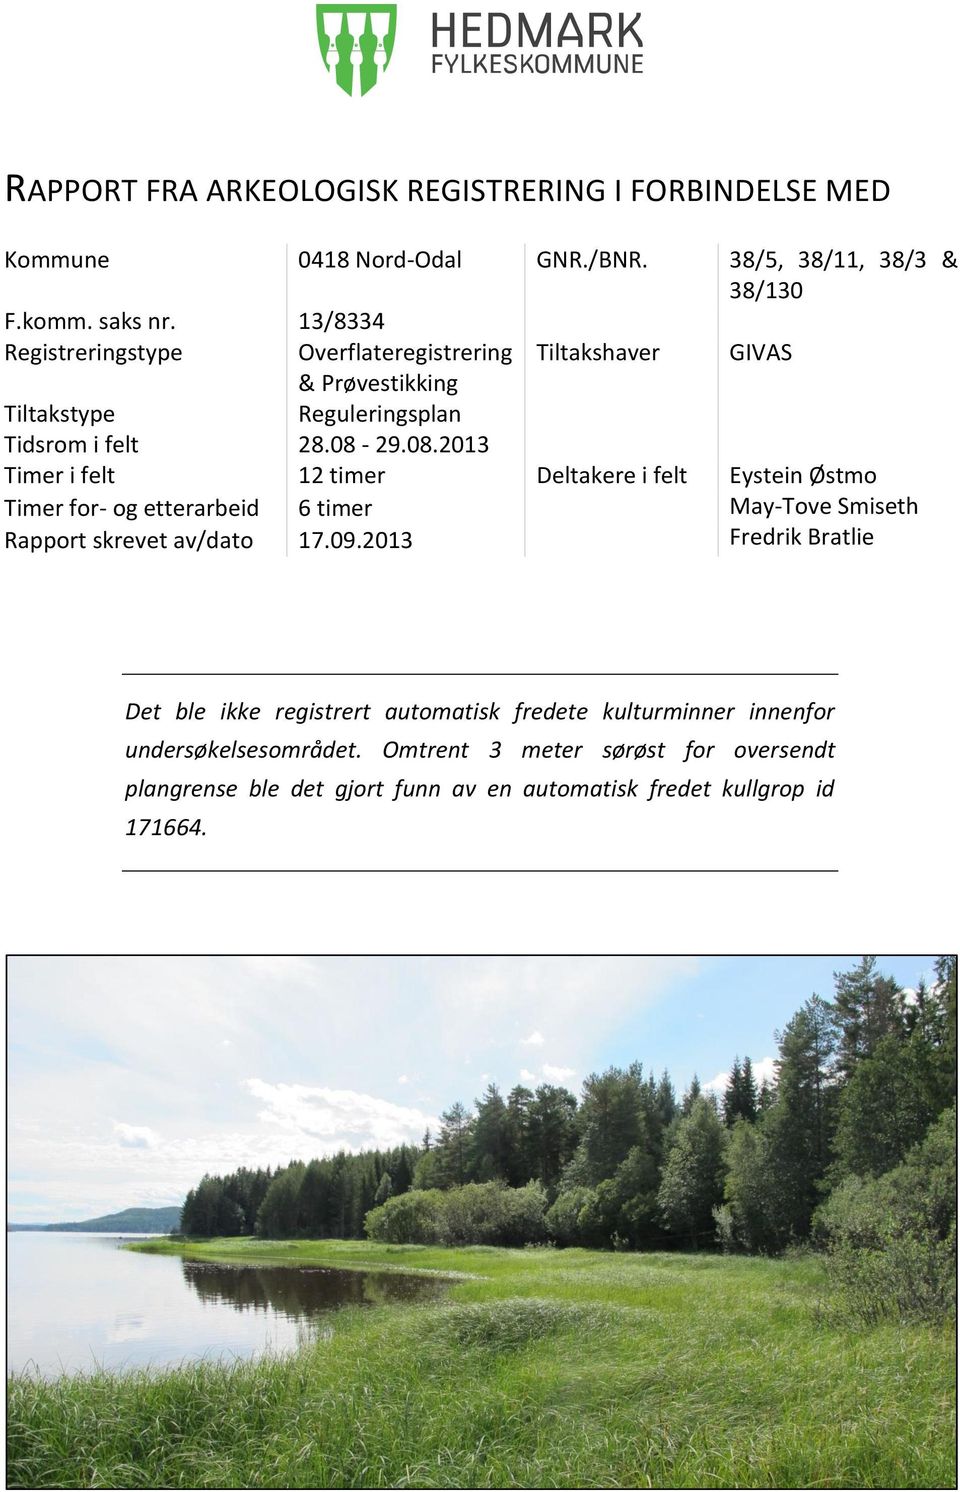 29.08.2013 Timer i felt 12 timer Deltakere i felt Eystein Østmo Timer for- og etterarbeid 6 timer May-Tove Smiseth Rapport skrevet av/dato 17.09.